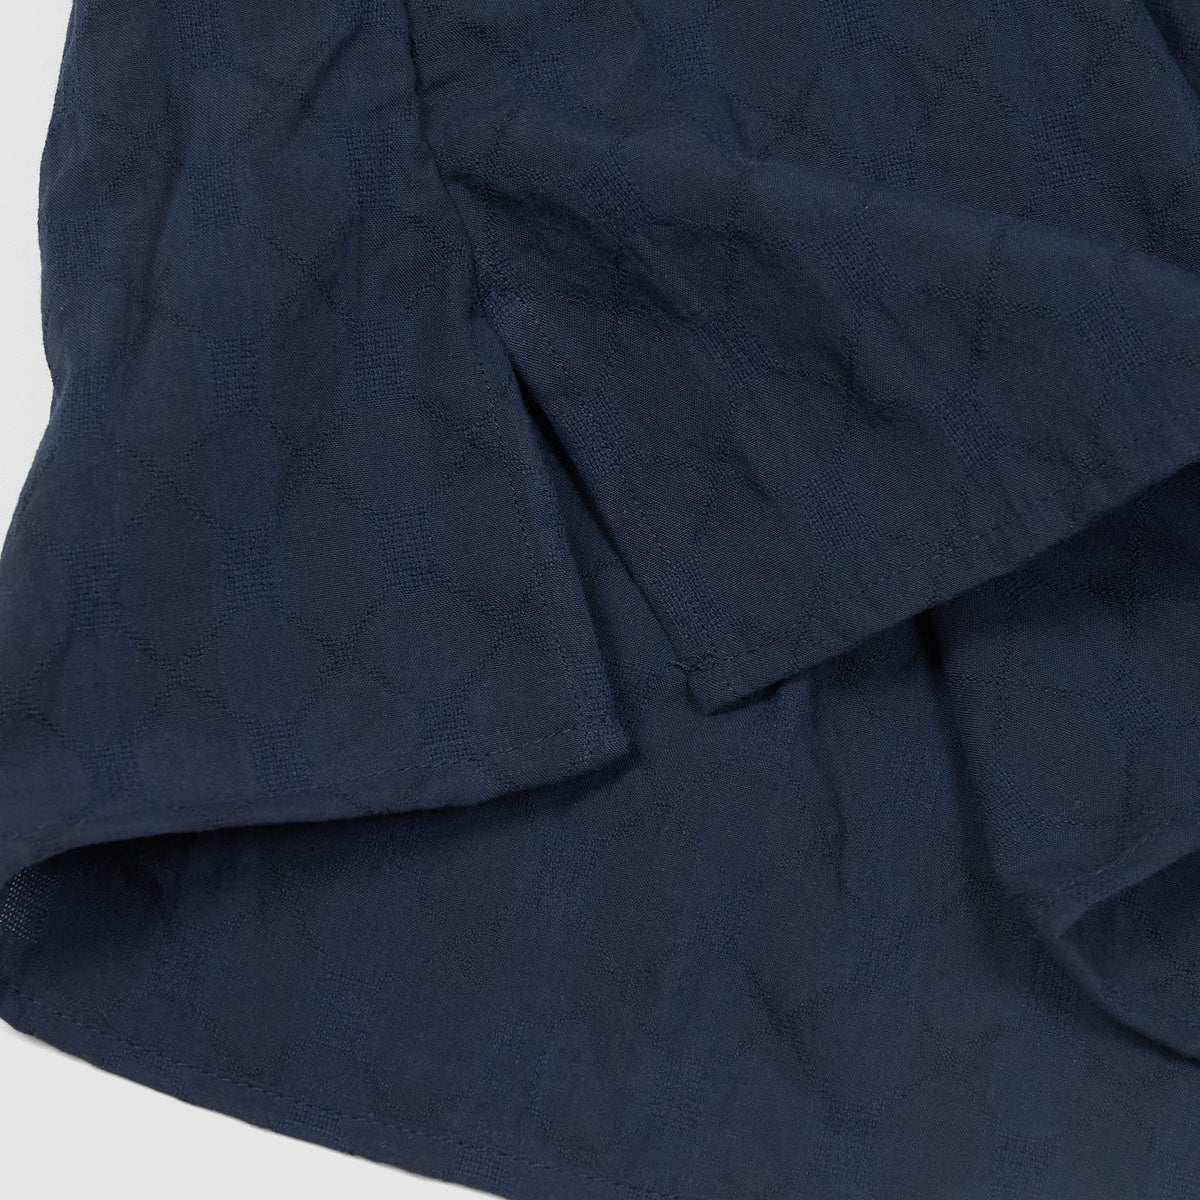 Gitman Vintage Short Sleeve Japanese Jacquard Camp Shirt